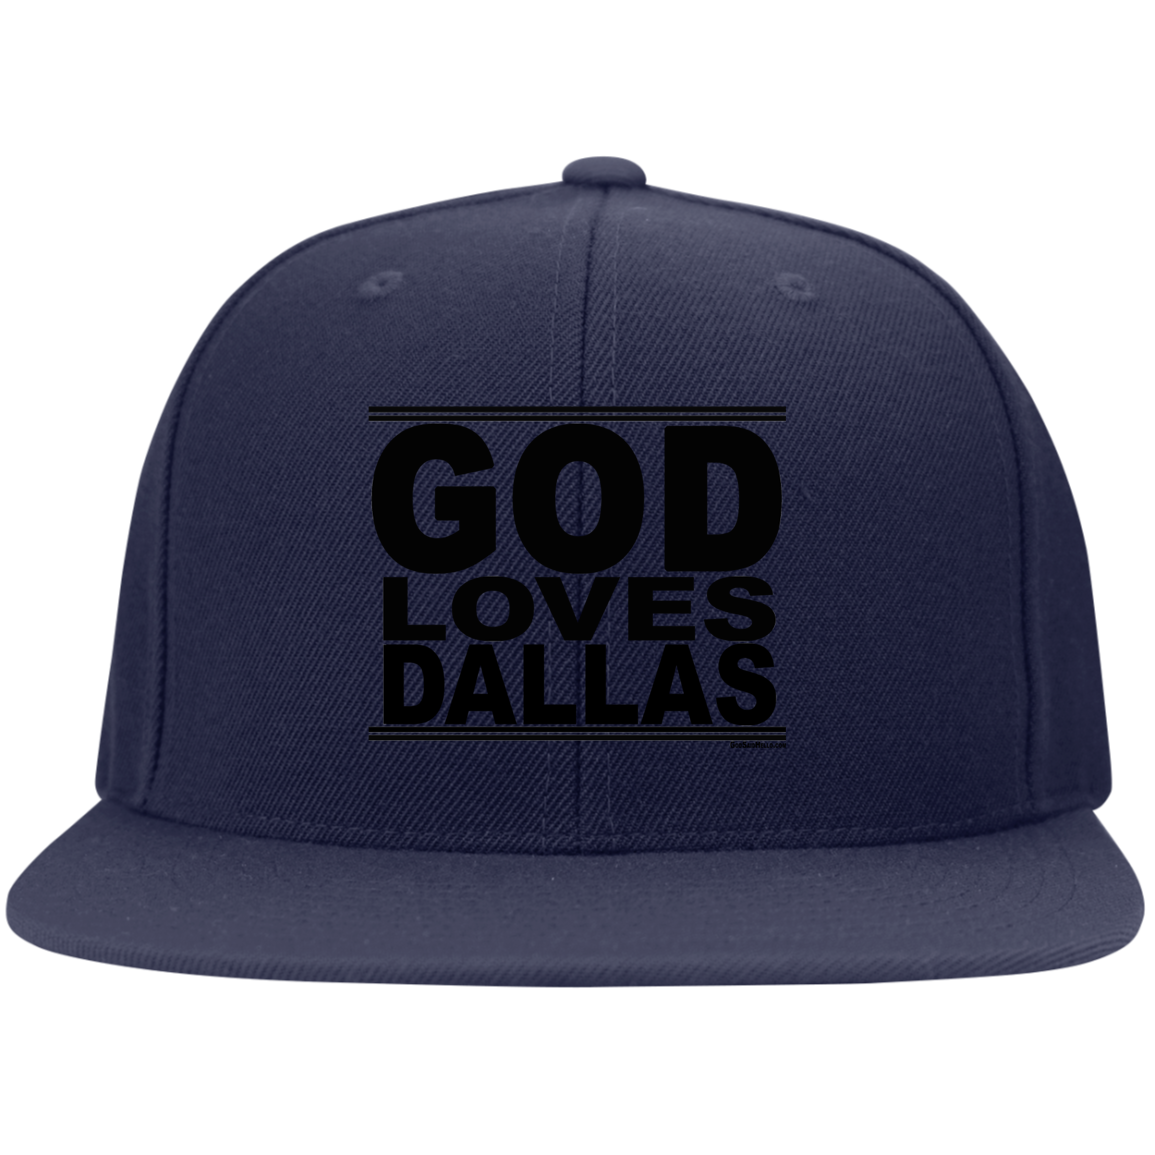 #GodLovesDallas - Snapback Hat